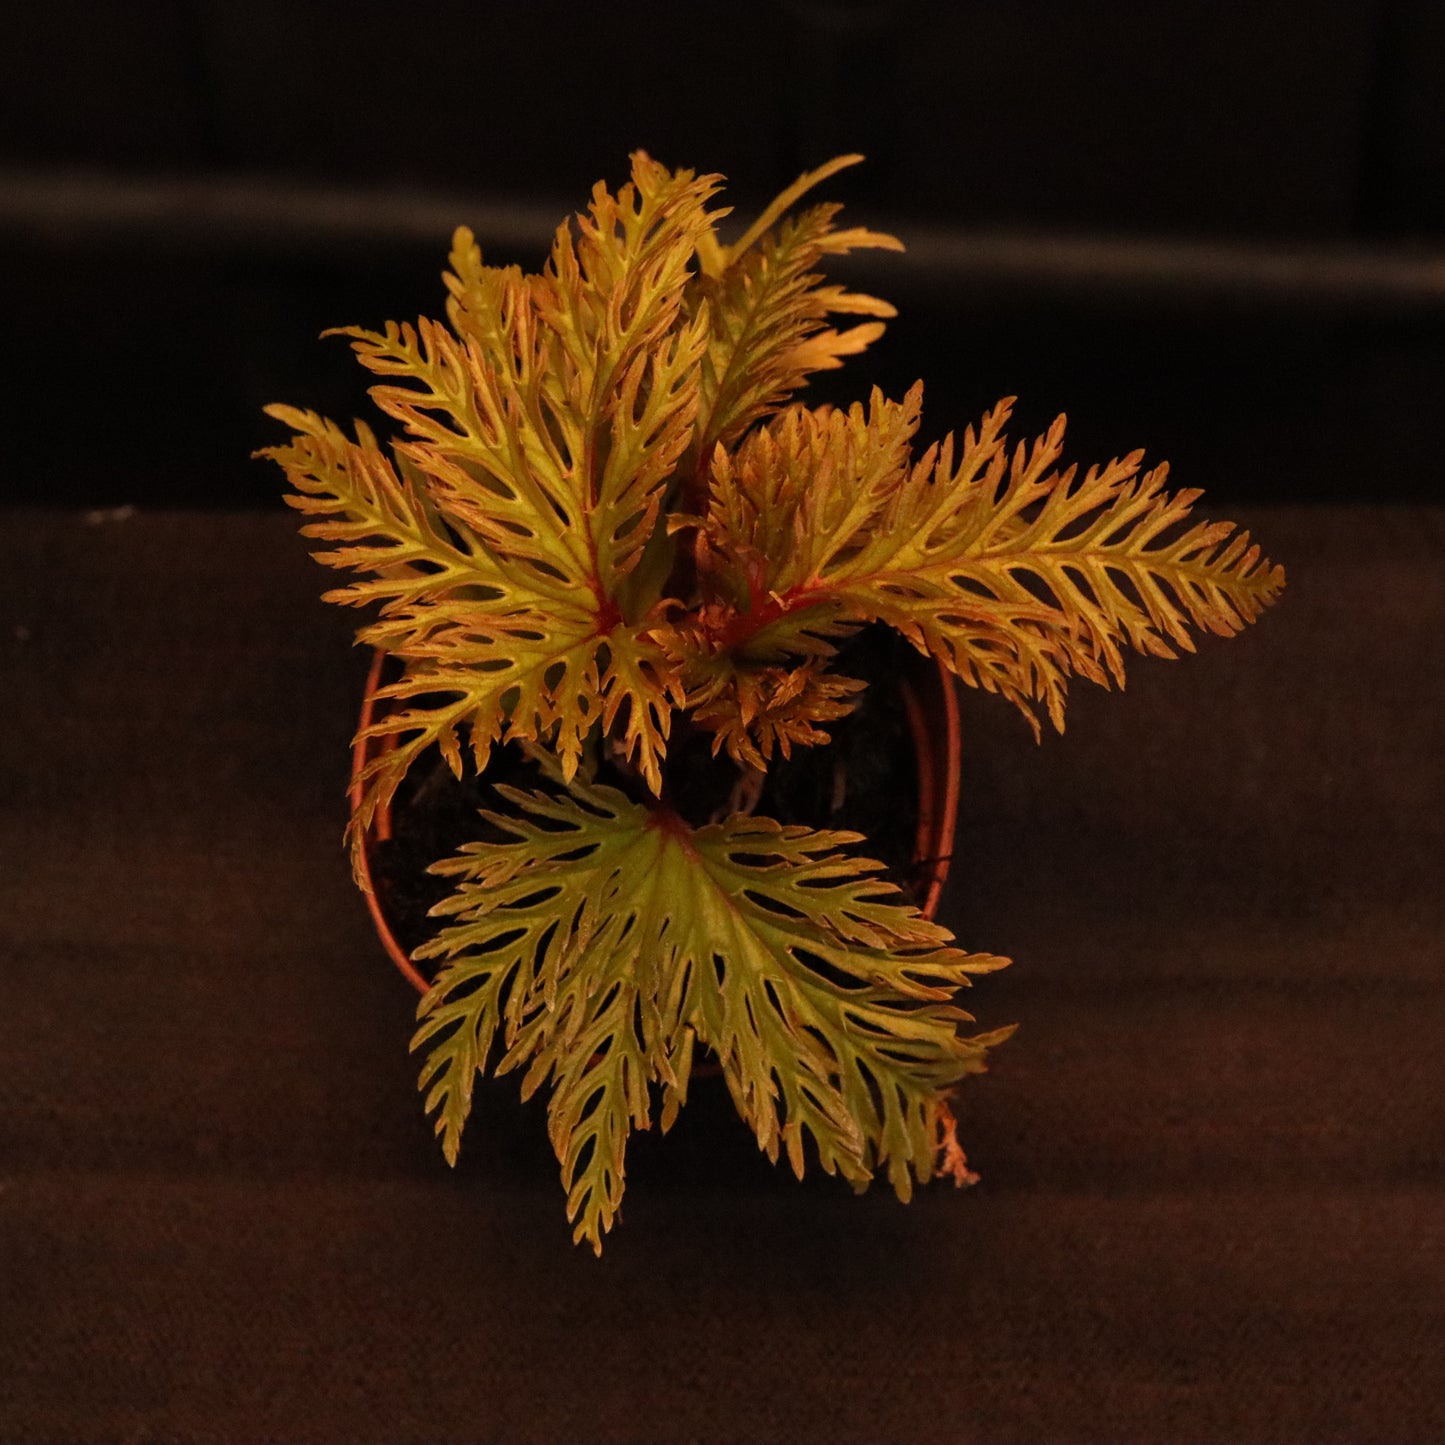 Begonia Bipinnatifida "Fern Leaf" - Grower's Choice